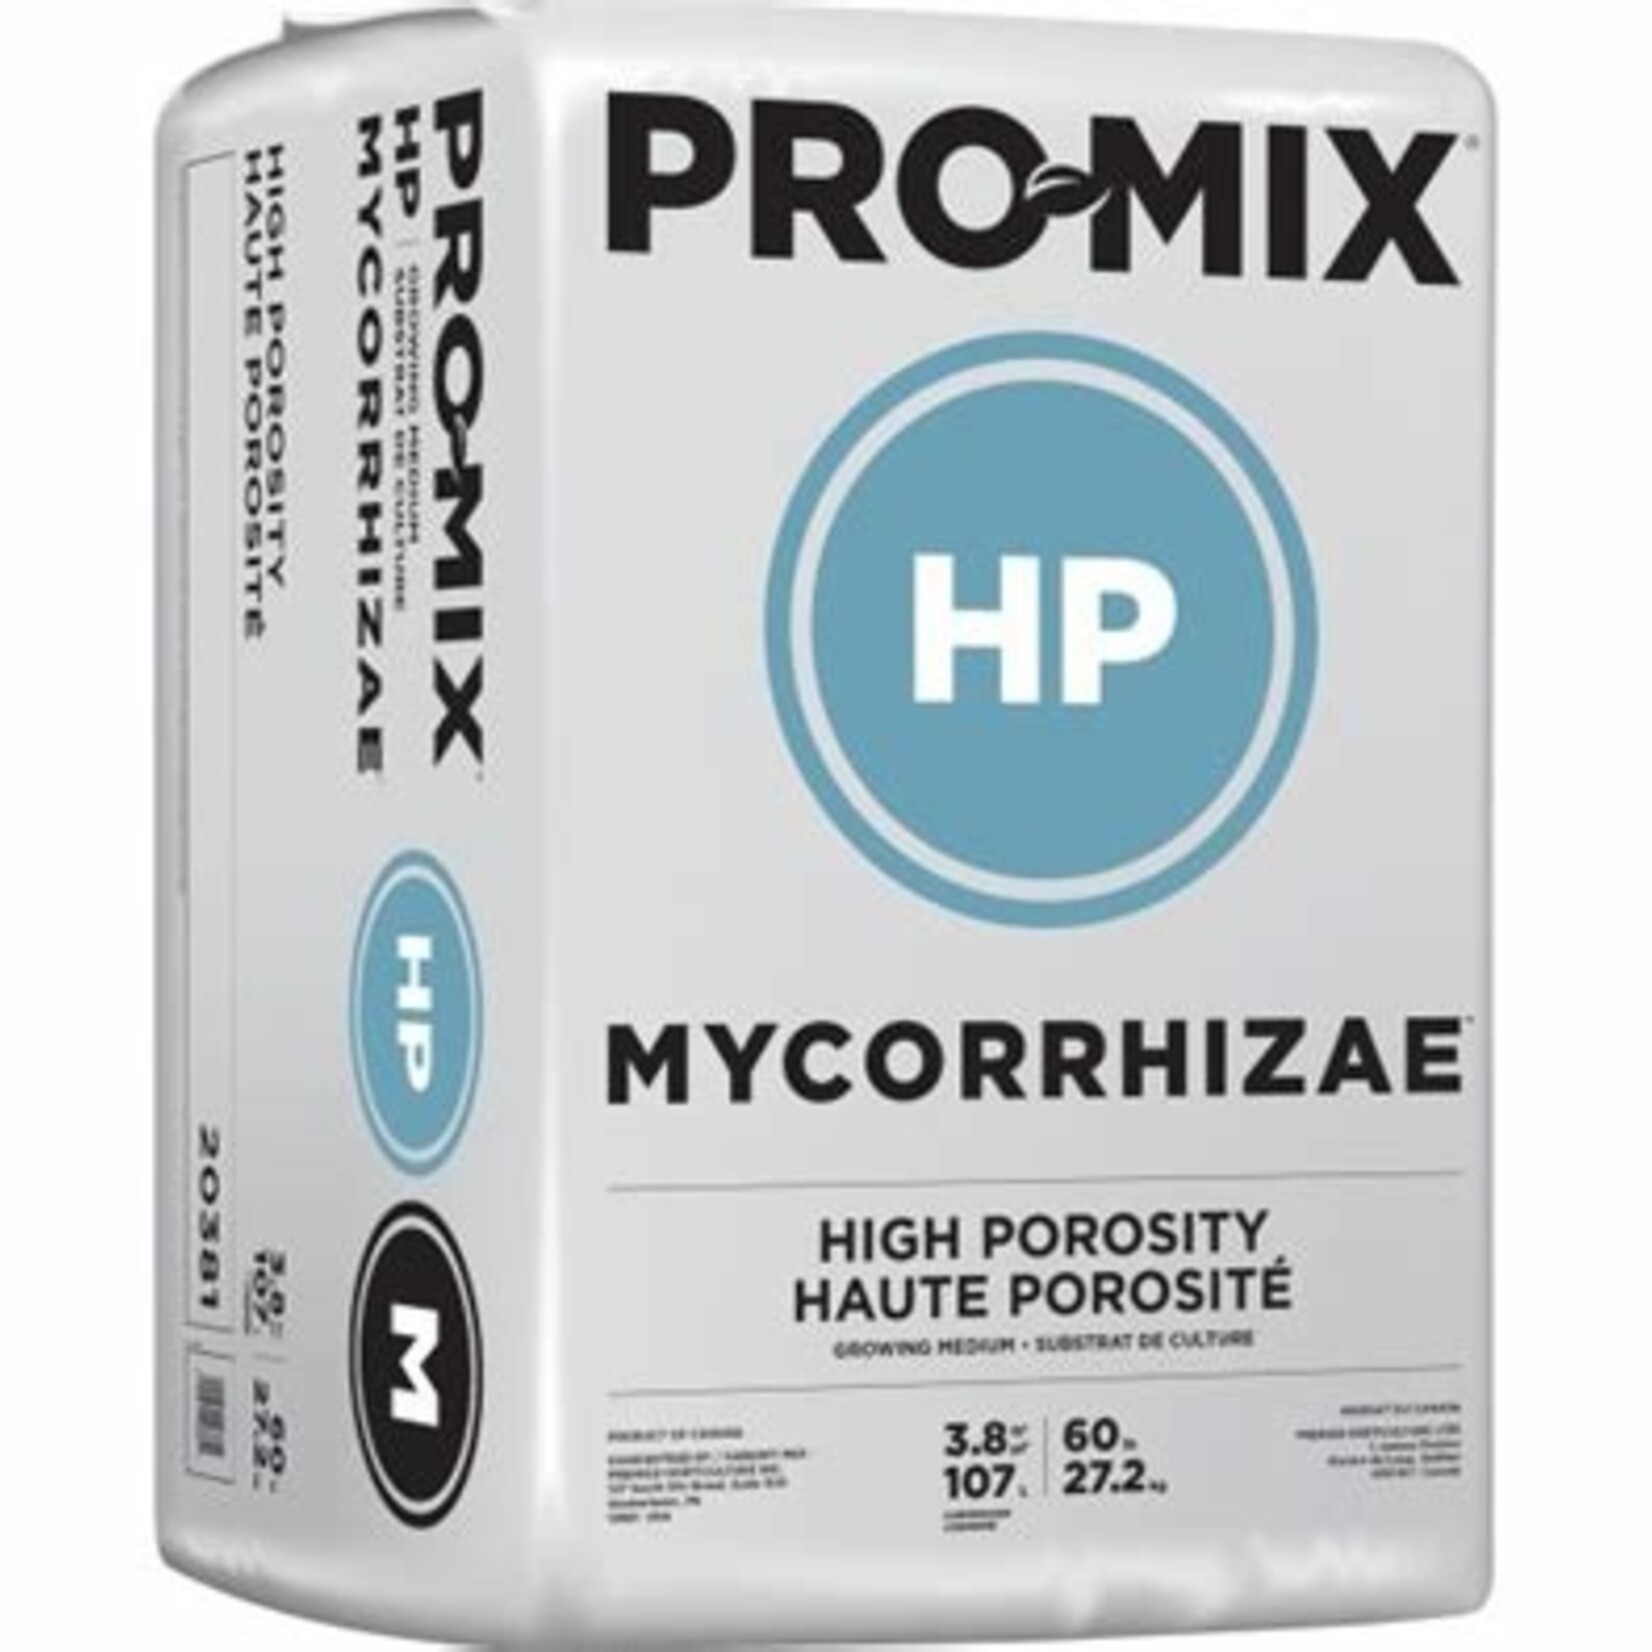 Pro-Mix PRO-MIX HP Mycorrhizae 3.8cf